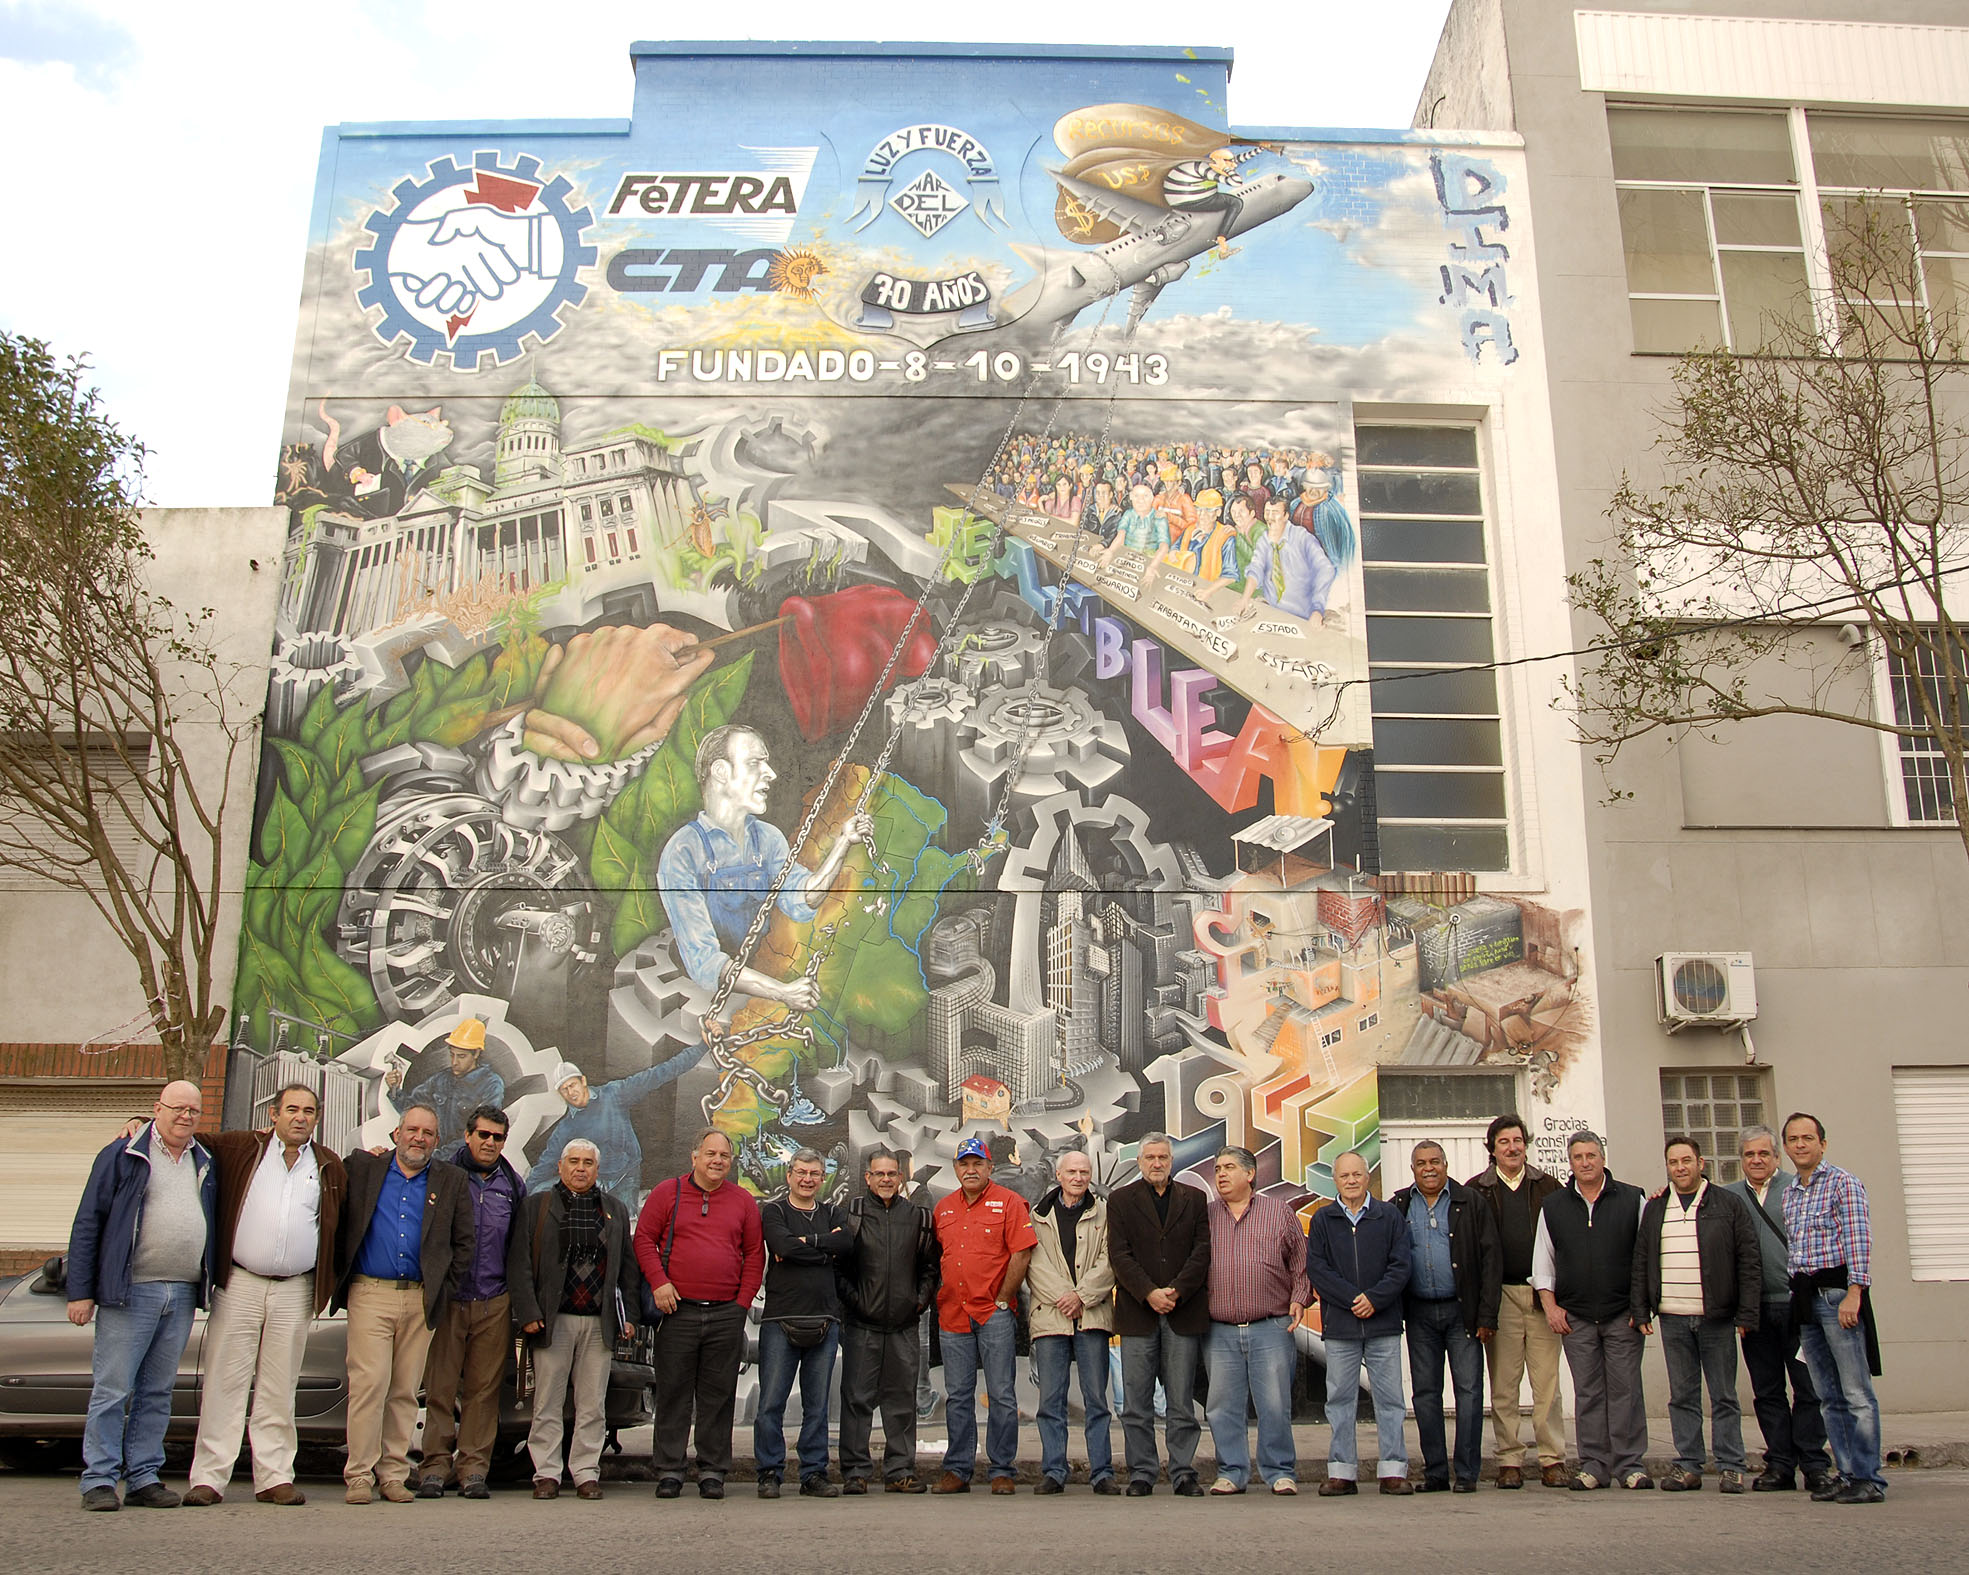 Se realizó el Encuentro Internacional sobre energía, soberanía y sociedad - Diario La Capital - 14/10/2013